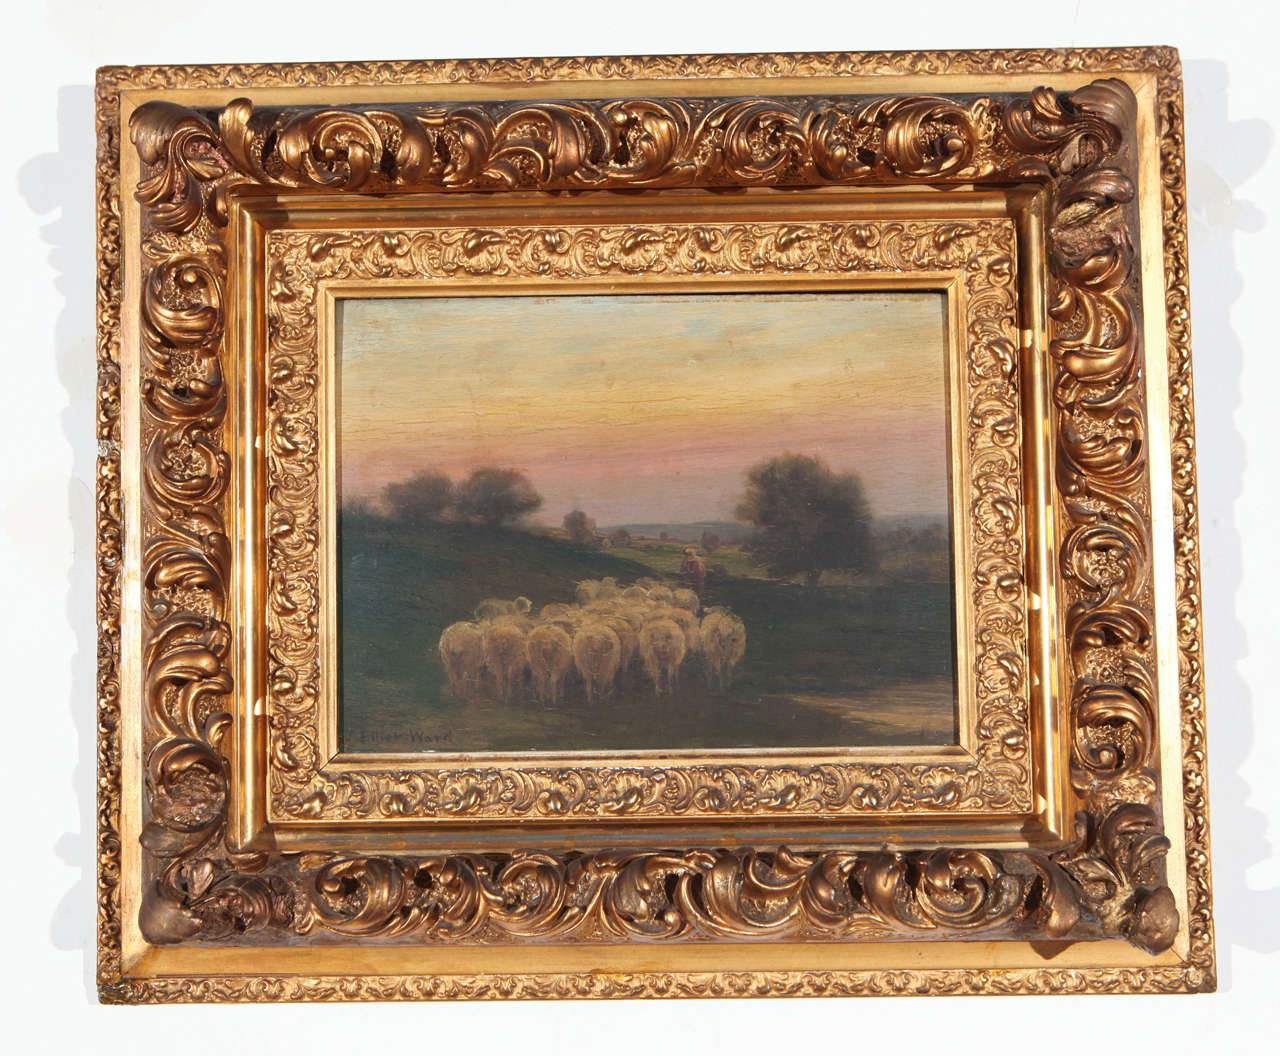 Dusk sheep herding scene in elaborate gold frame. Signed Elliot Ward.